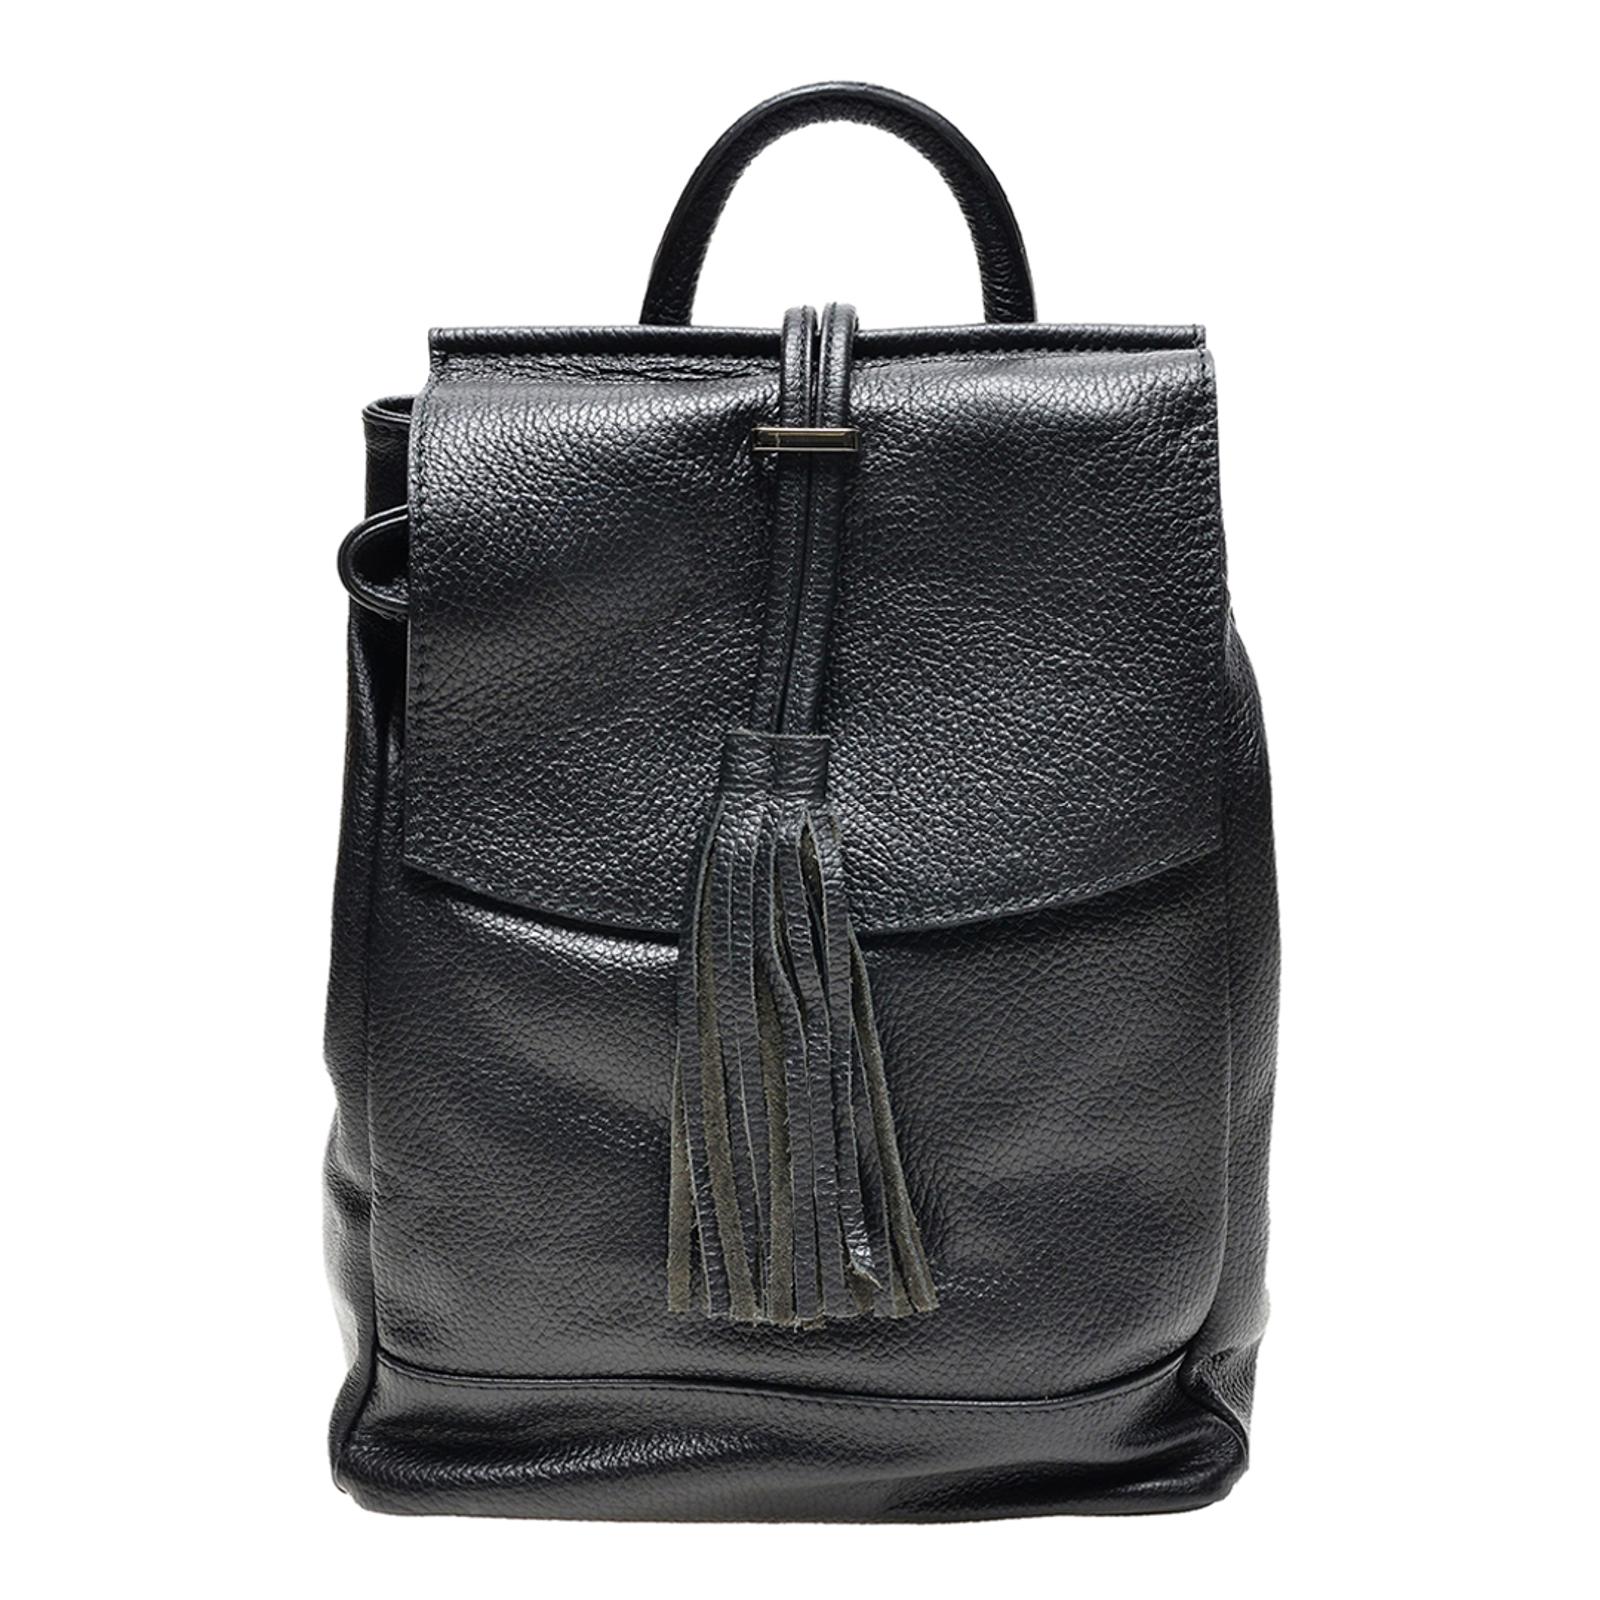 Black Leather Tassel Zip Backpack - BrandAlley